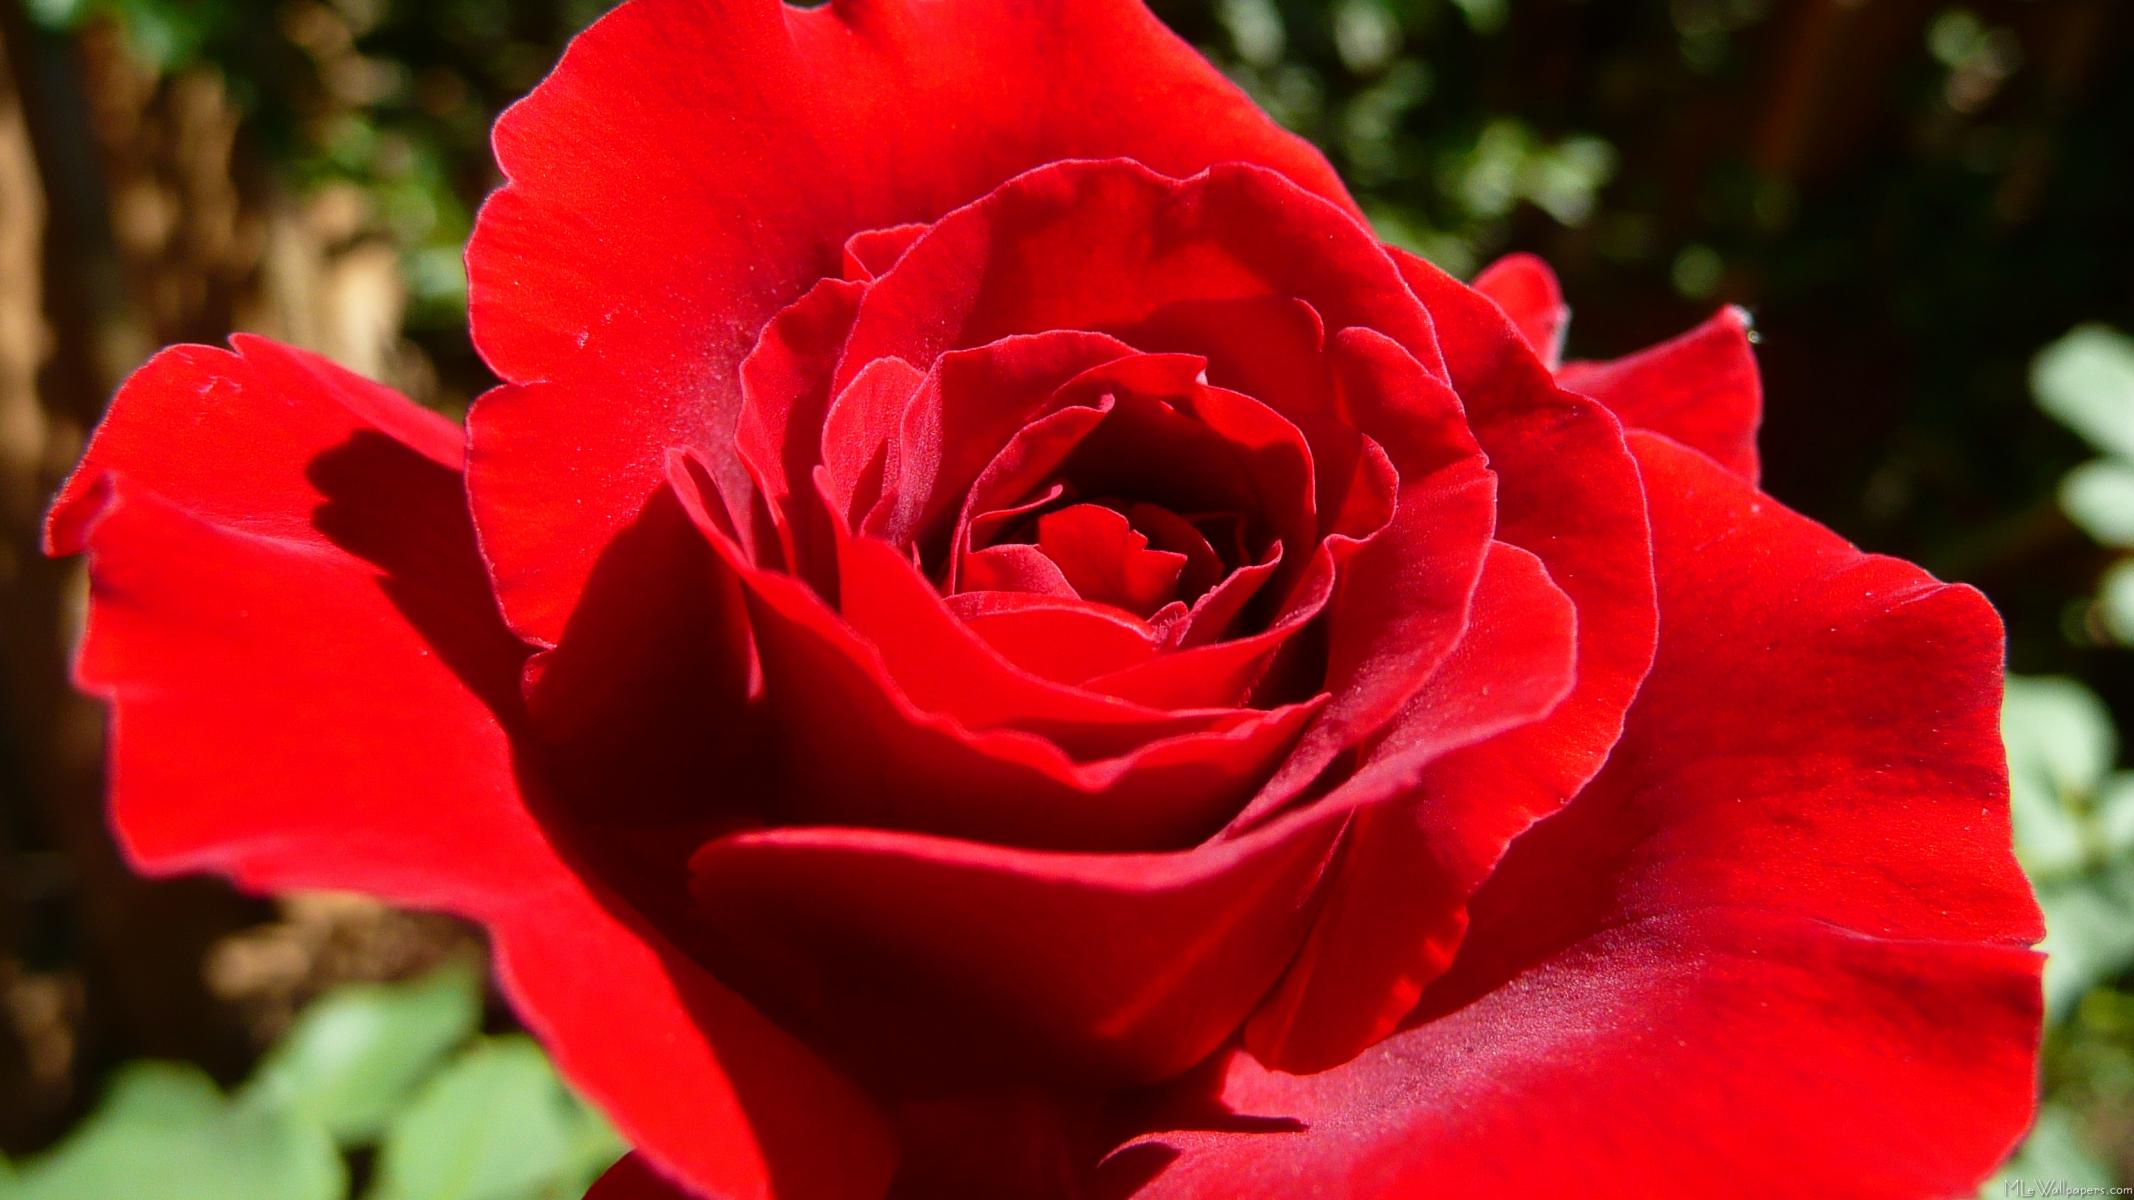  زراعة الورد في الحدائق  Bright-Red-Rose-197